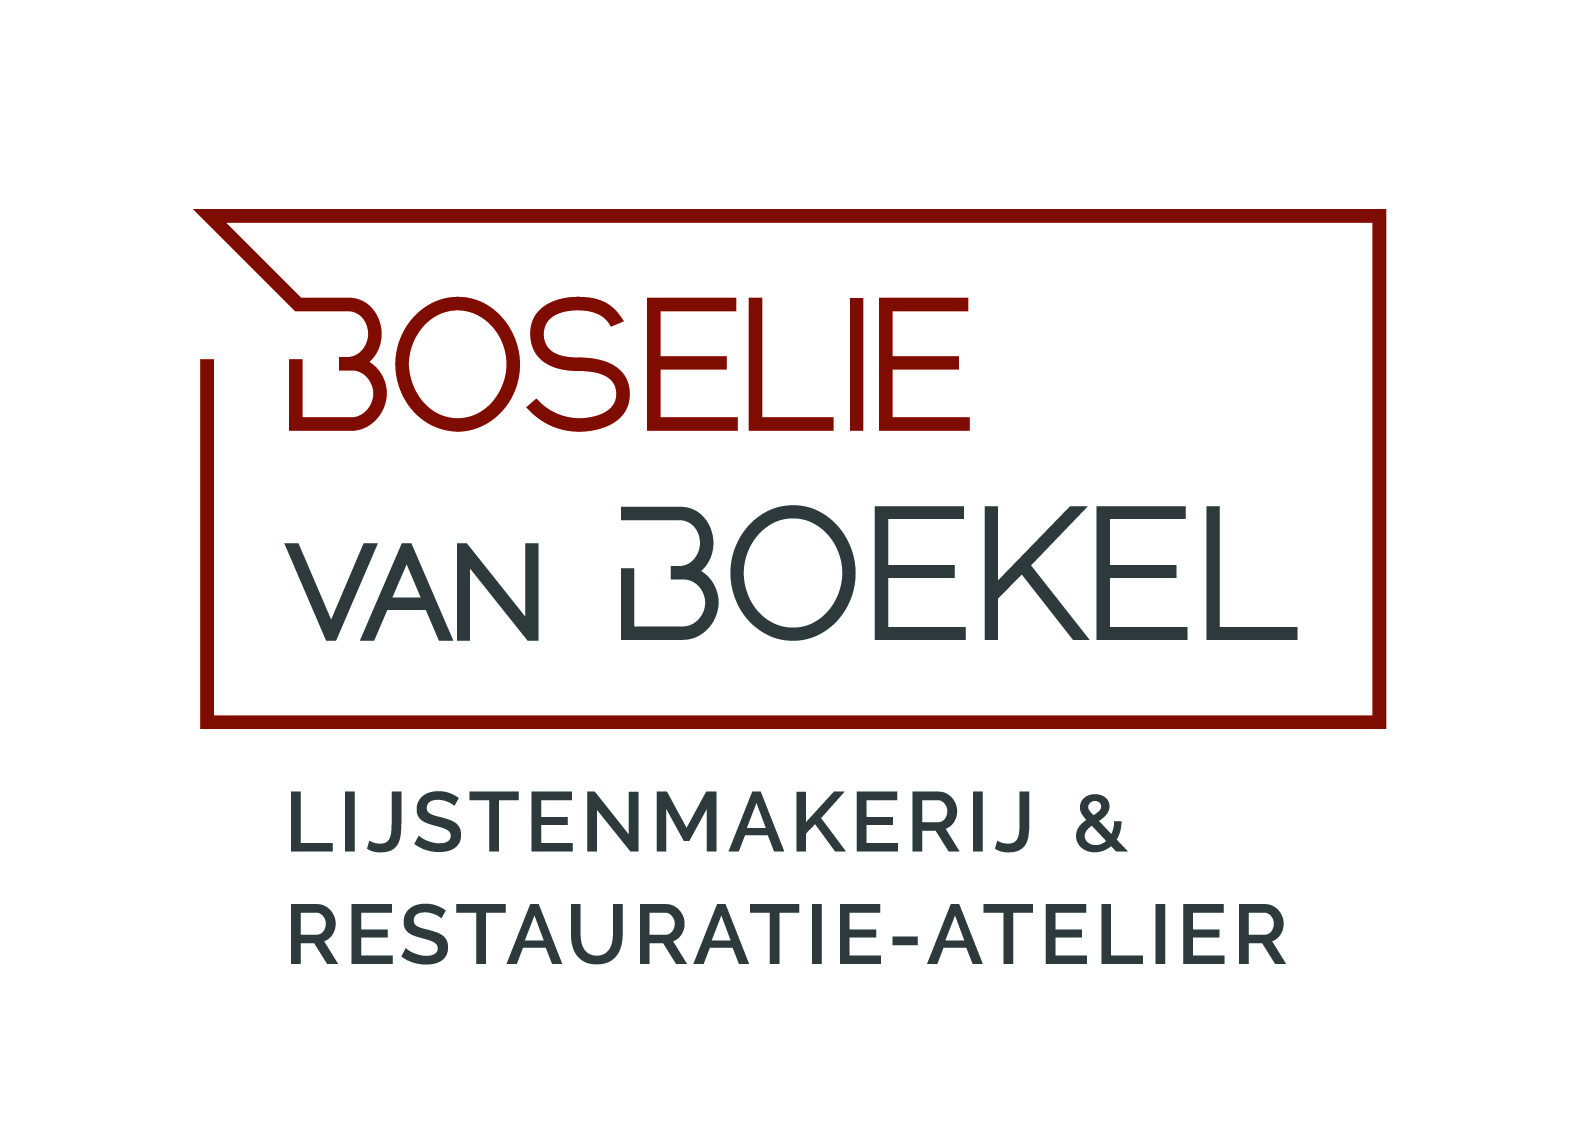 BOSELIE van BOEKEL Lijstenmakerij en Restauratie-atelier